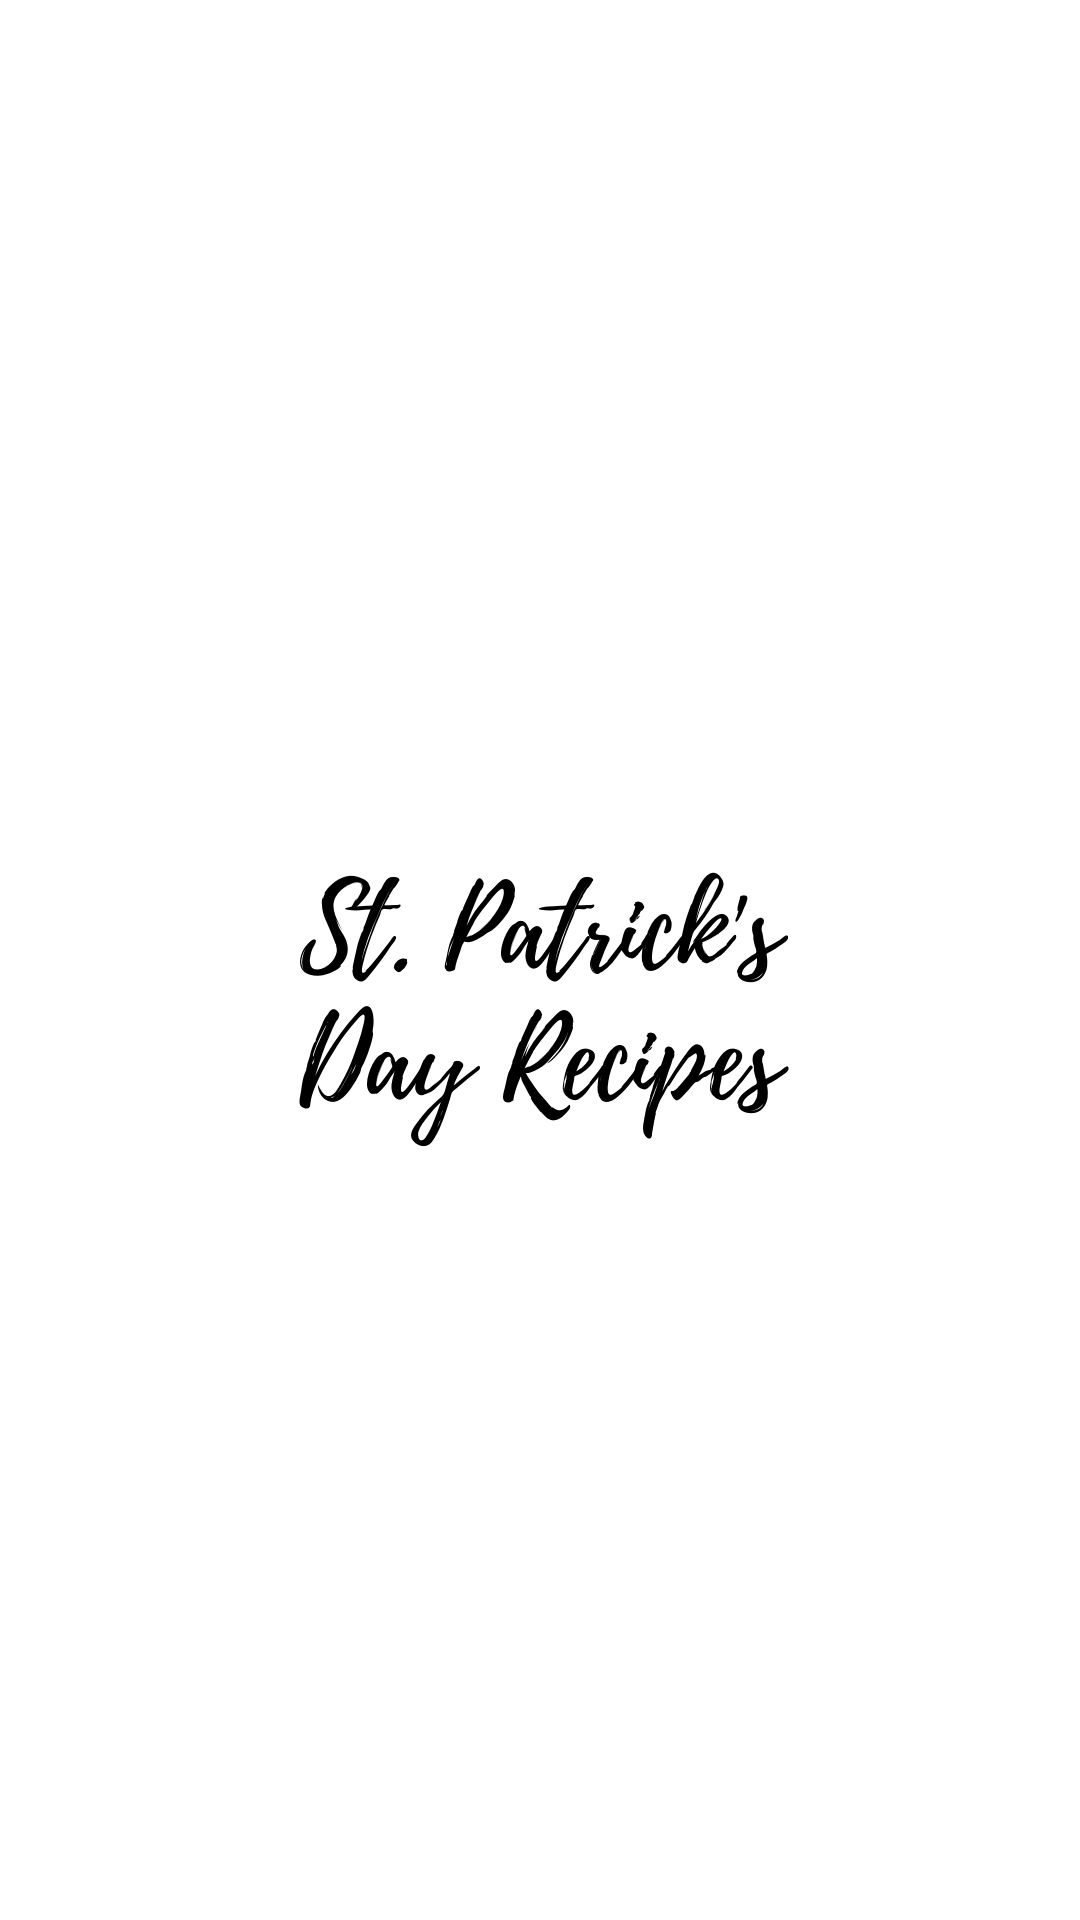 St. Patrick’s Day Recipes